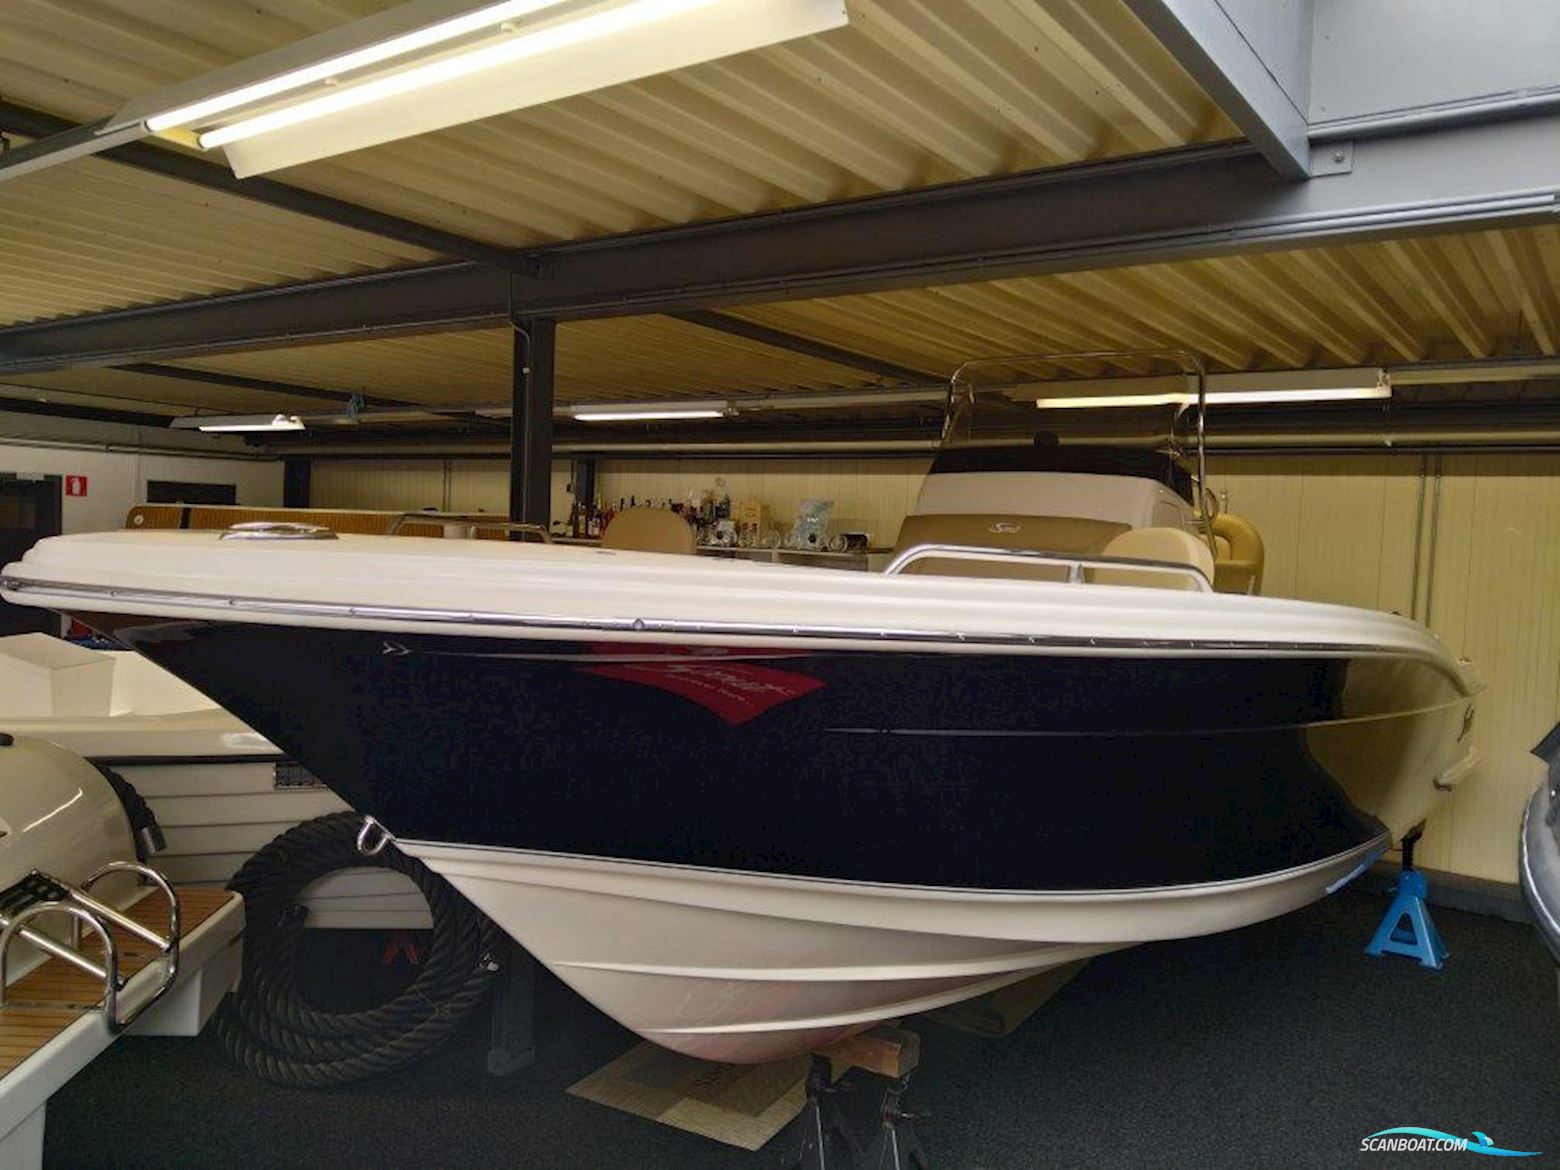 Scout 215 Xsf Motorbåt 2020, med Honda motor, Holland